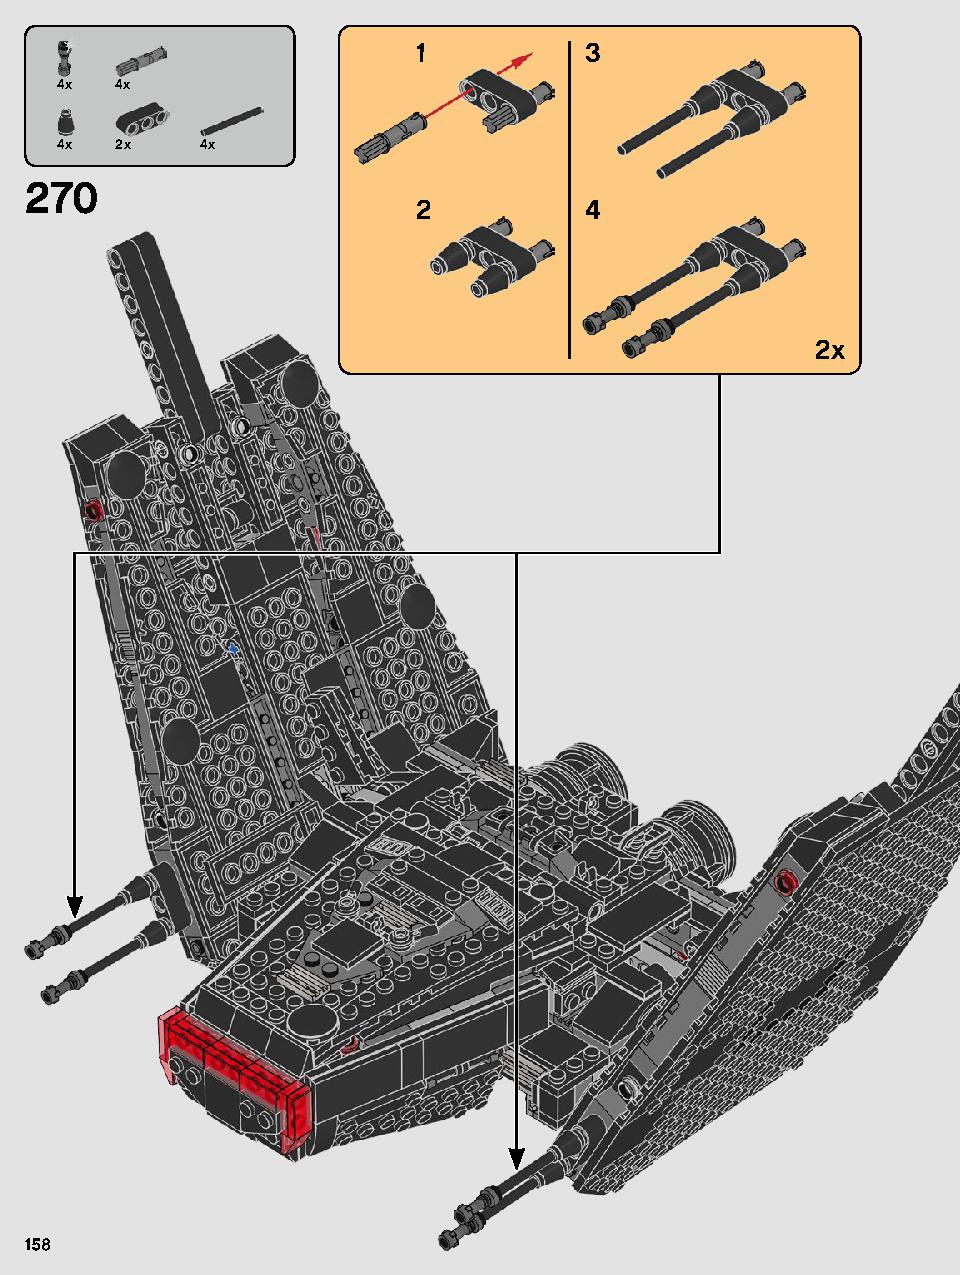 스타워즈 카일로 렌의 셔틀™ 75256 레고 세트 제품정보 레고 조립설명서 158 page